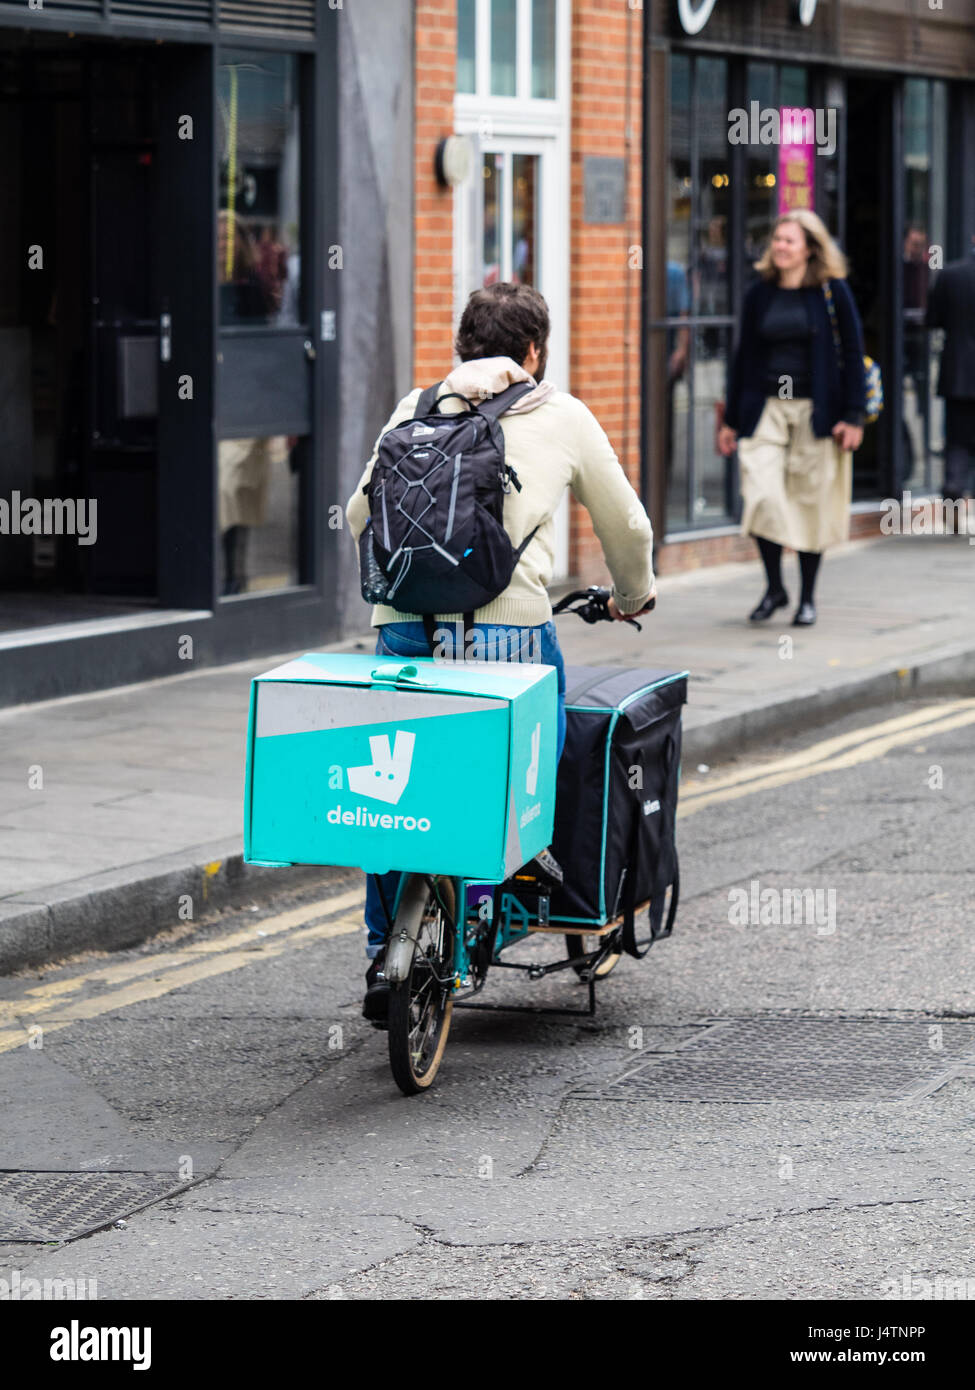 La entrega de alimentos Deliveroo courier entrega alimentos en una bicicleta de carga de gran capacidad. Foto de stock